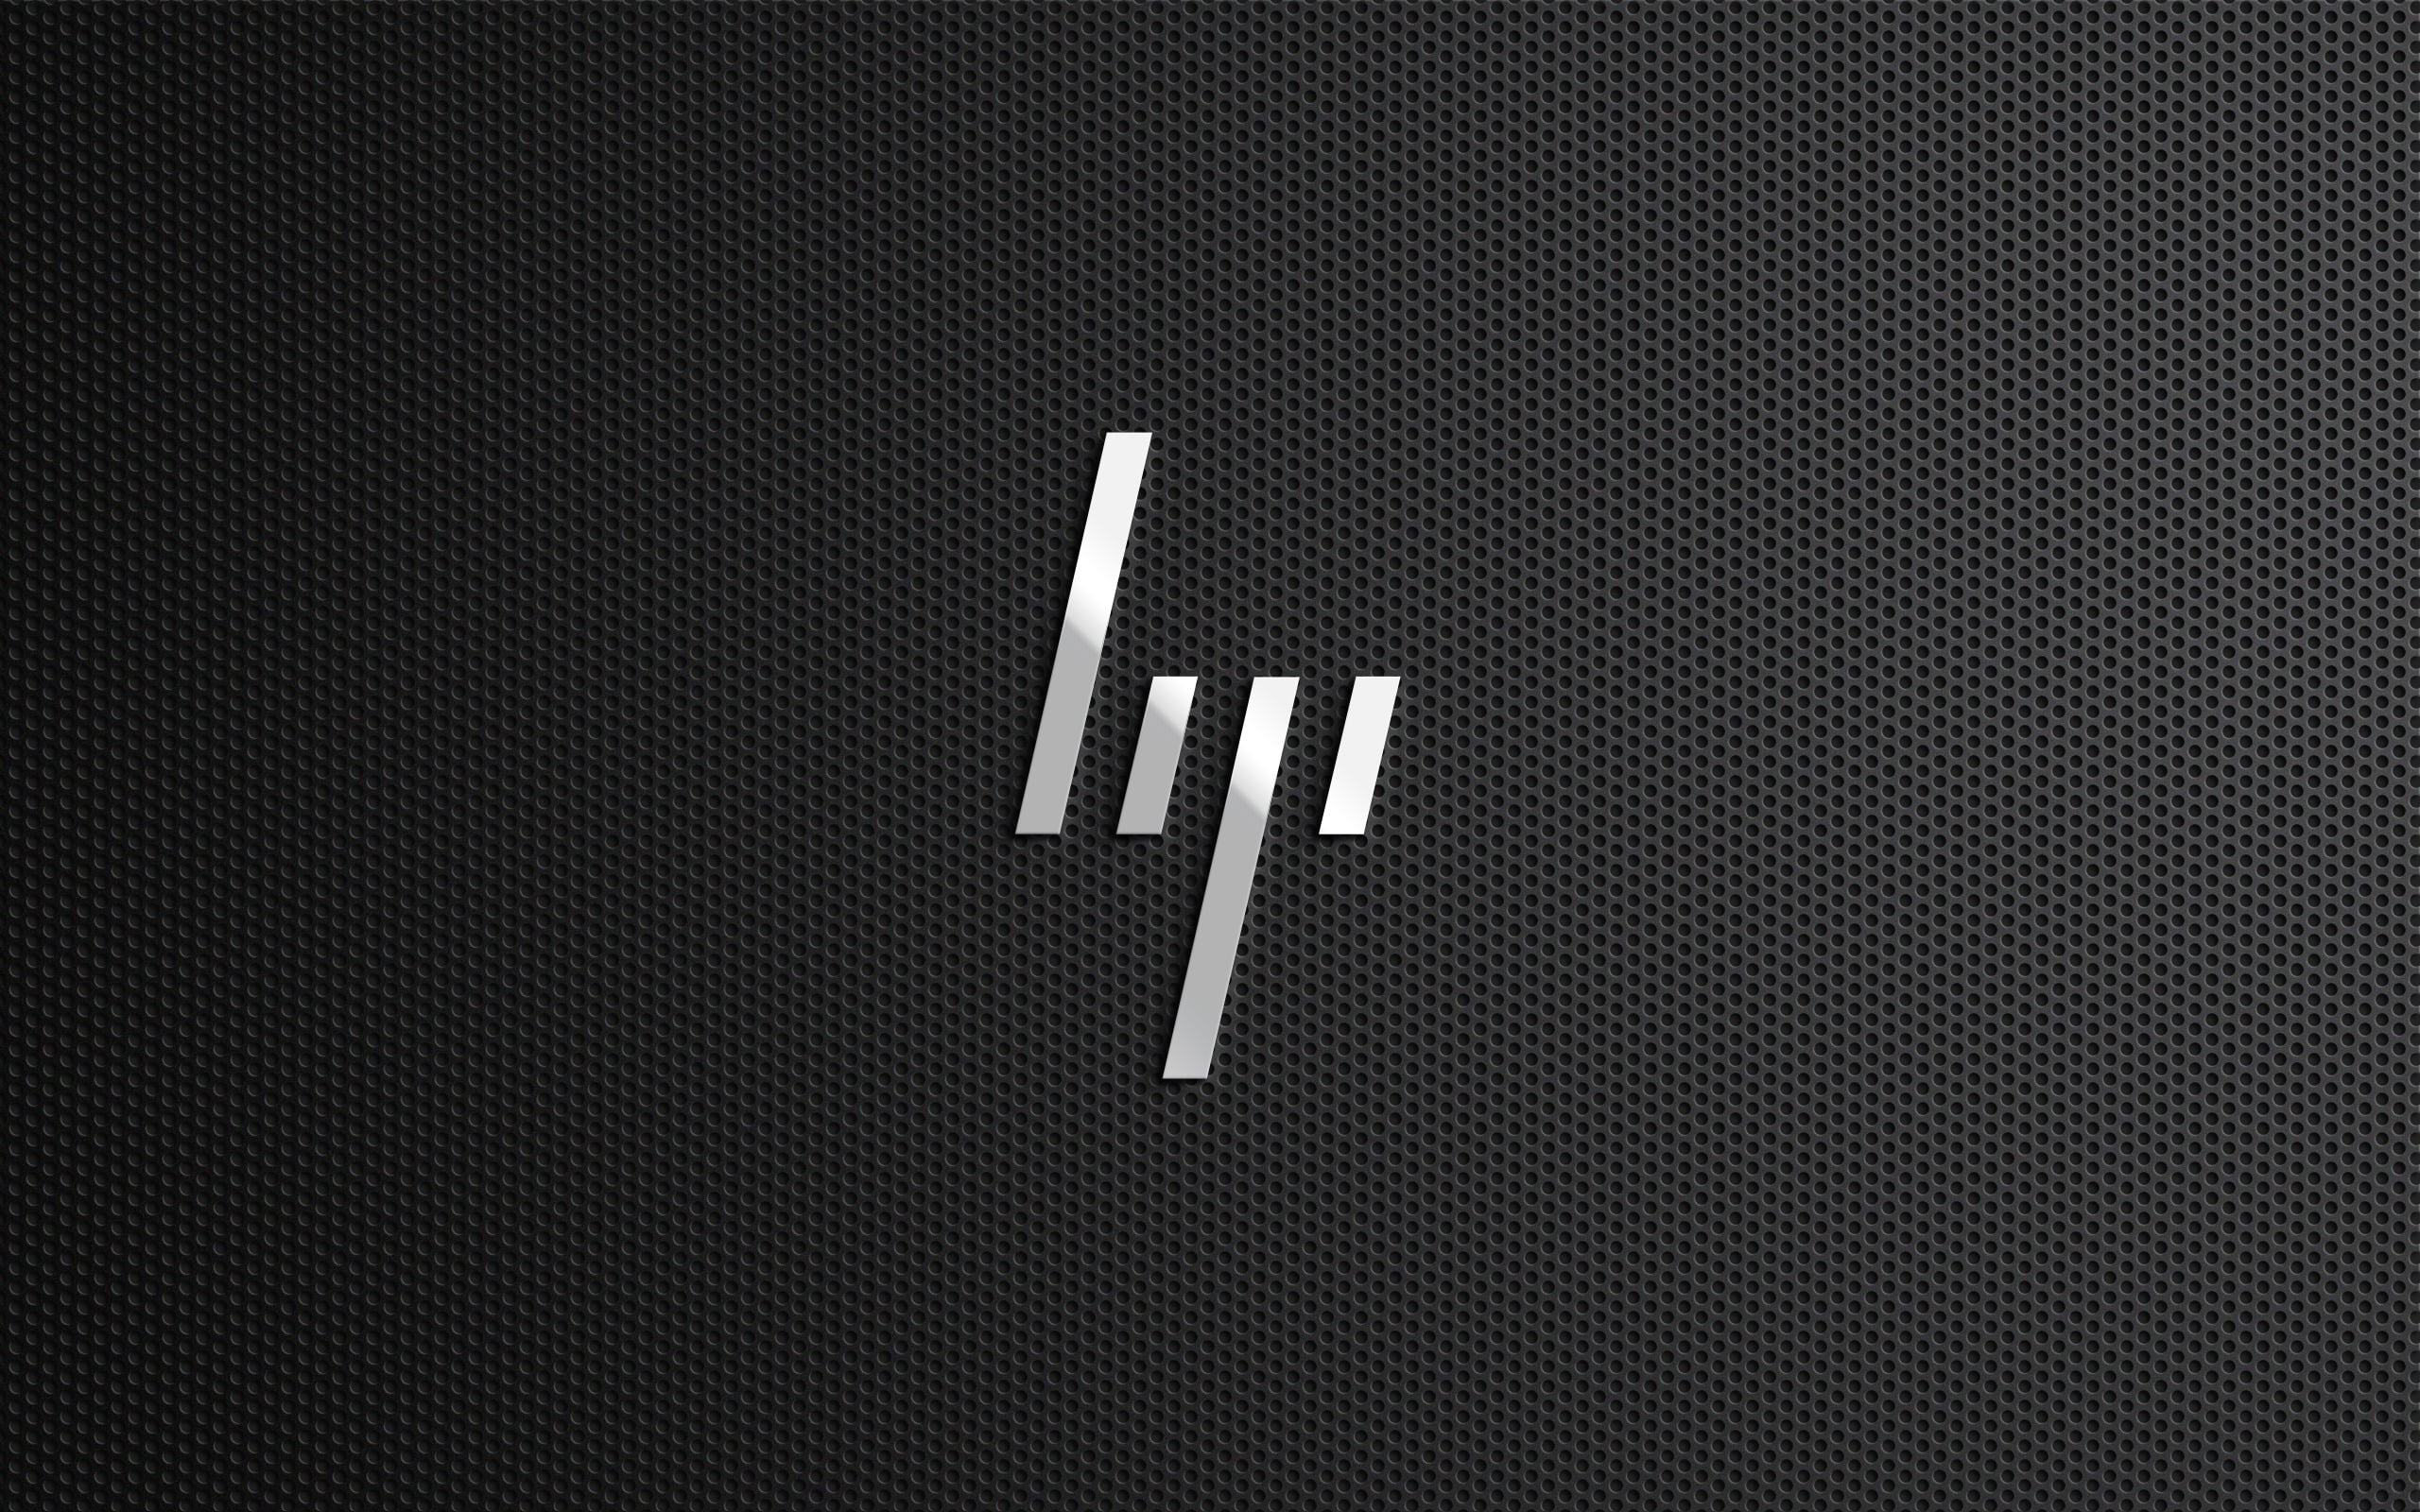 HP logo, rebrand, backgrounds, black Color, pattern, vector, metal